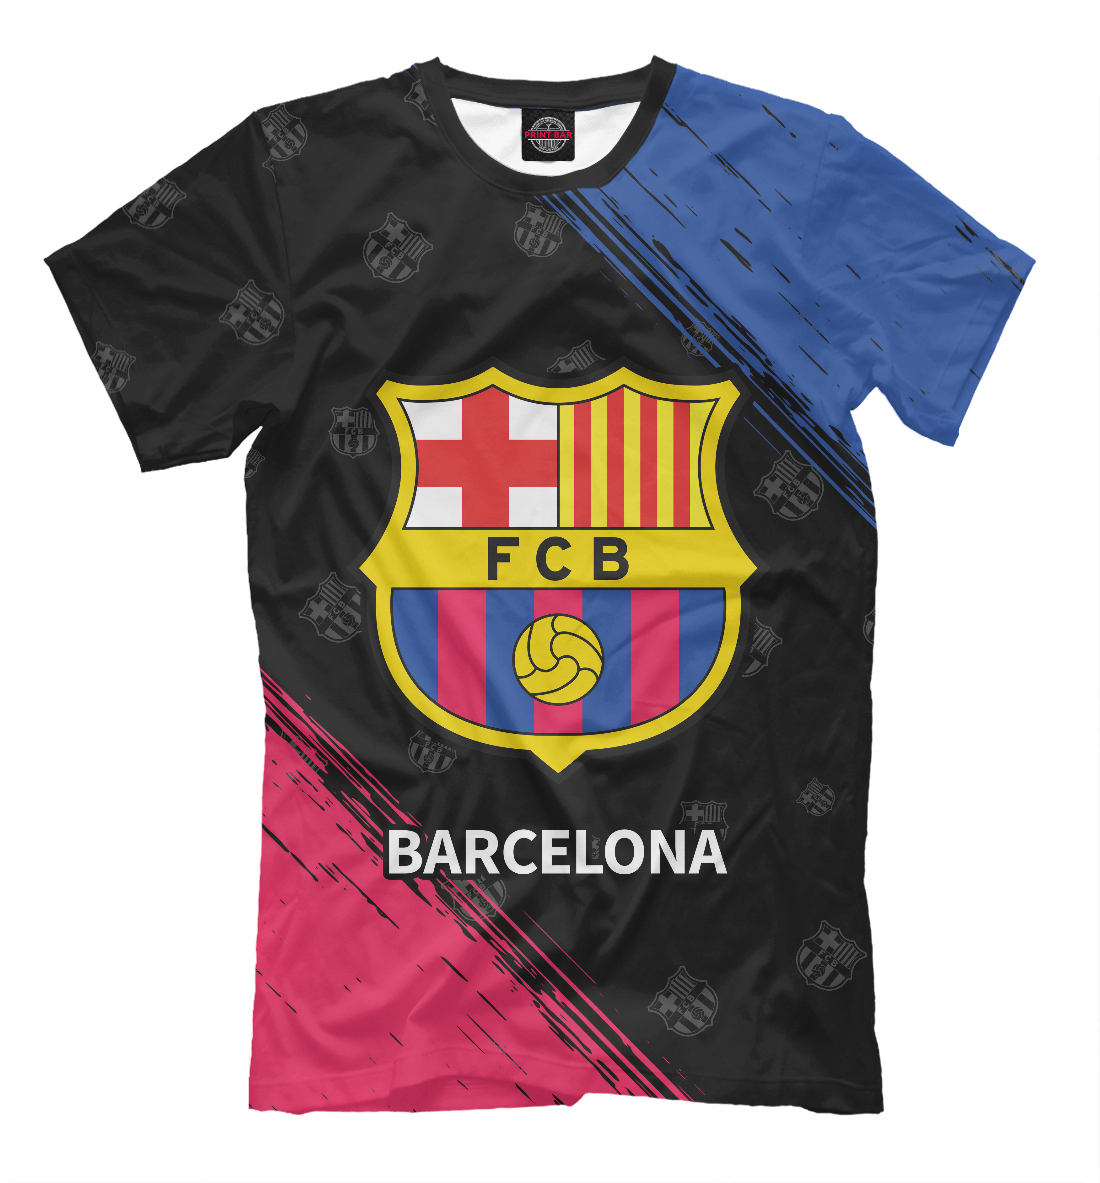 Футболка Barcelona / Барселона для мужчин, артикул: BAR-420222-fut-2mp